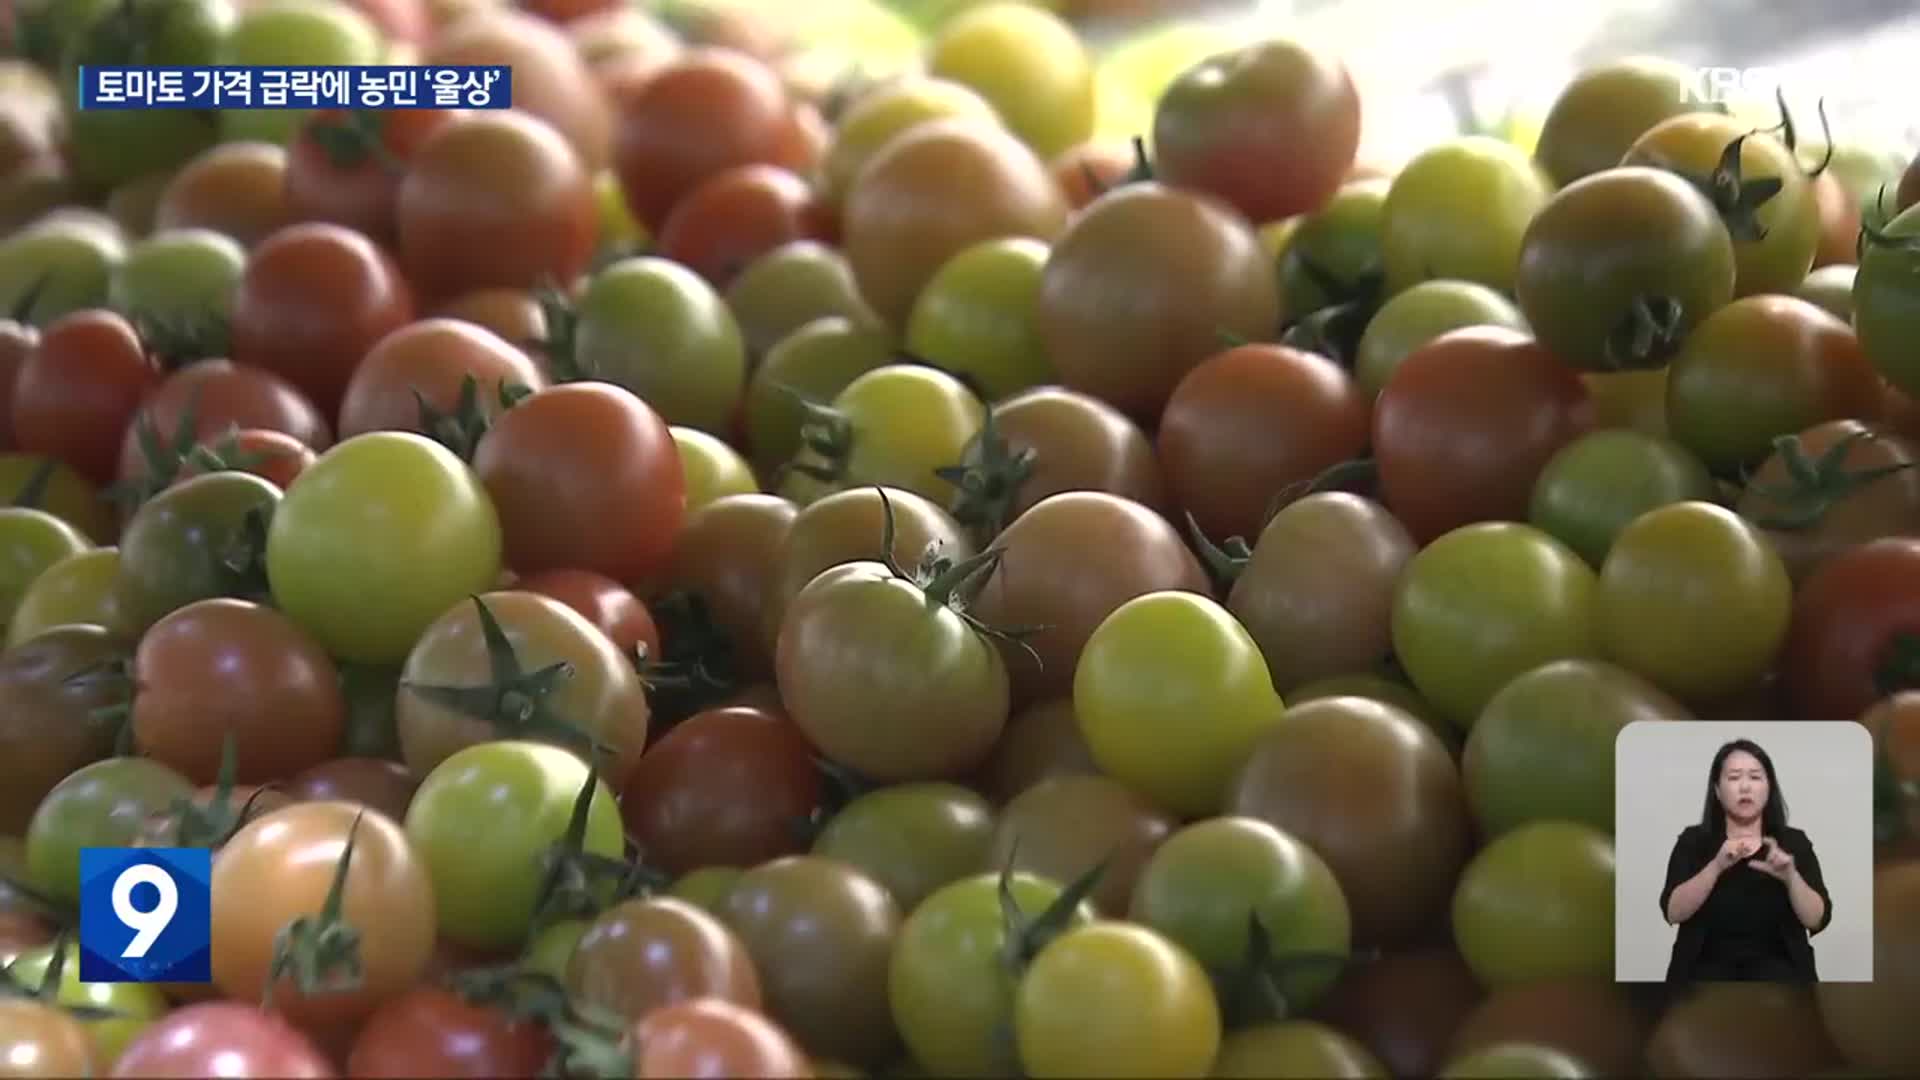 토마토 가격 47% 급락…“나머지 토마토 문제없어”